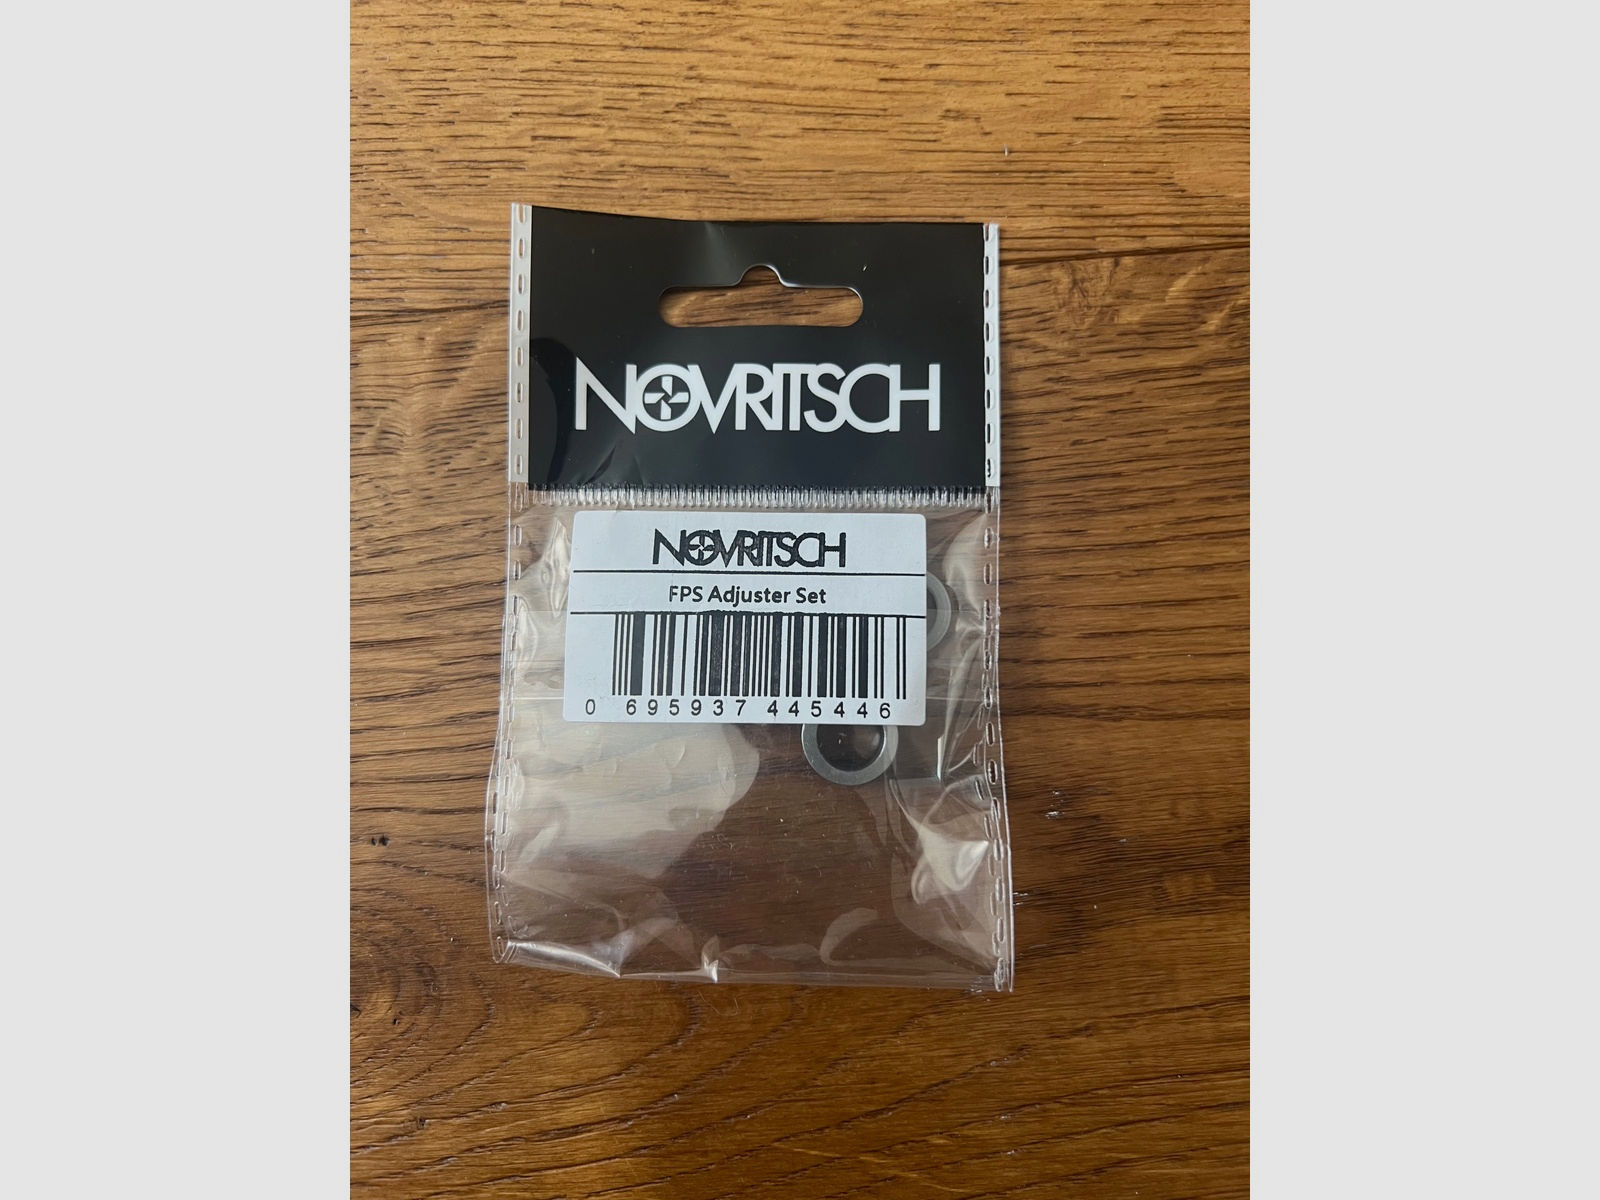 Novritsch Ssg10 A1 komplett Kit 